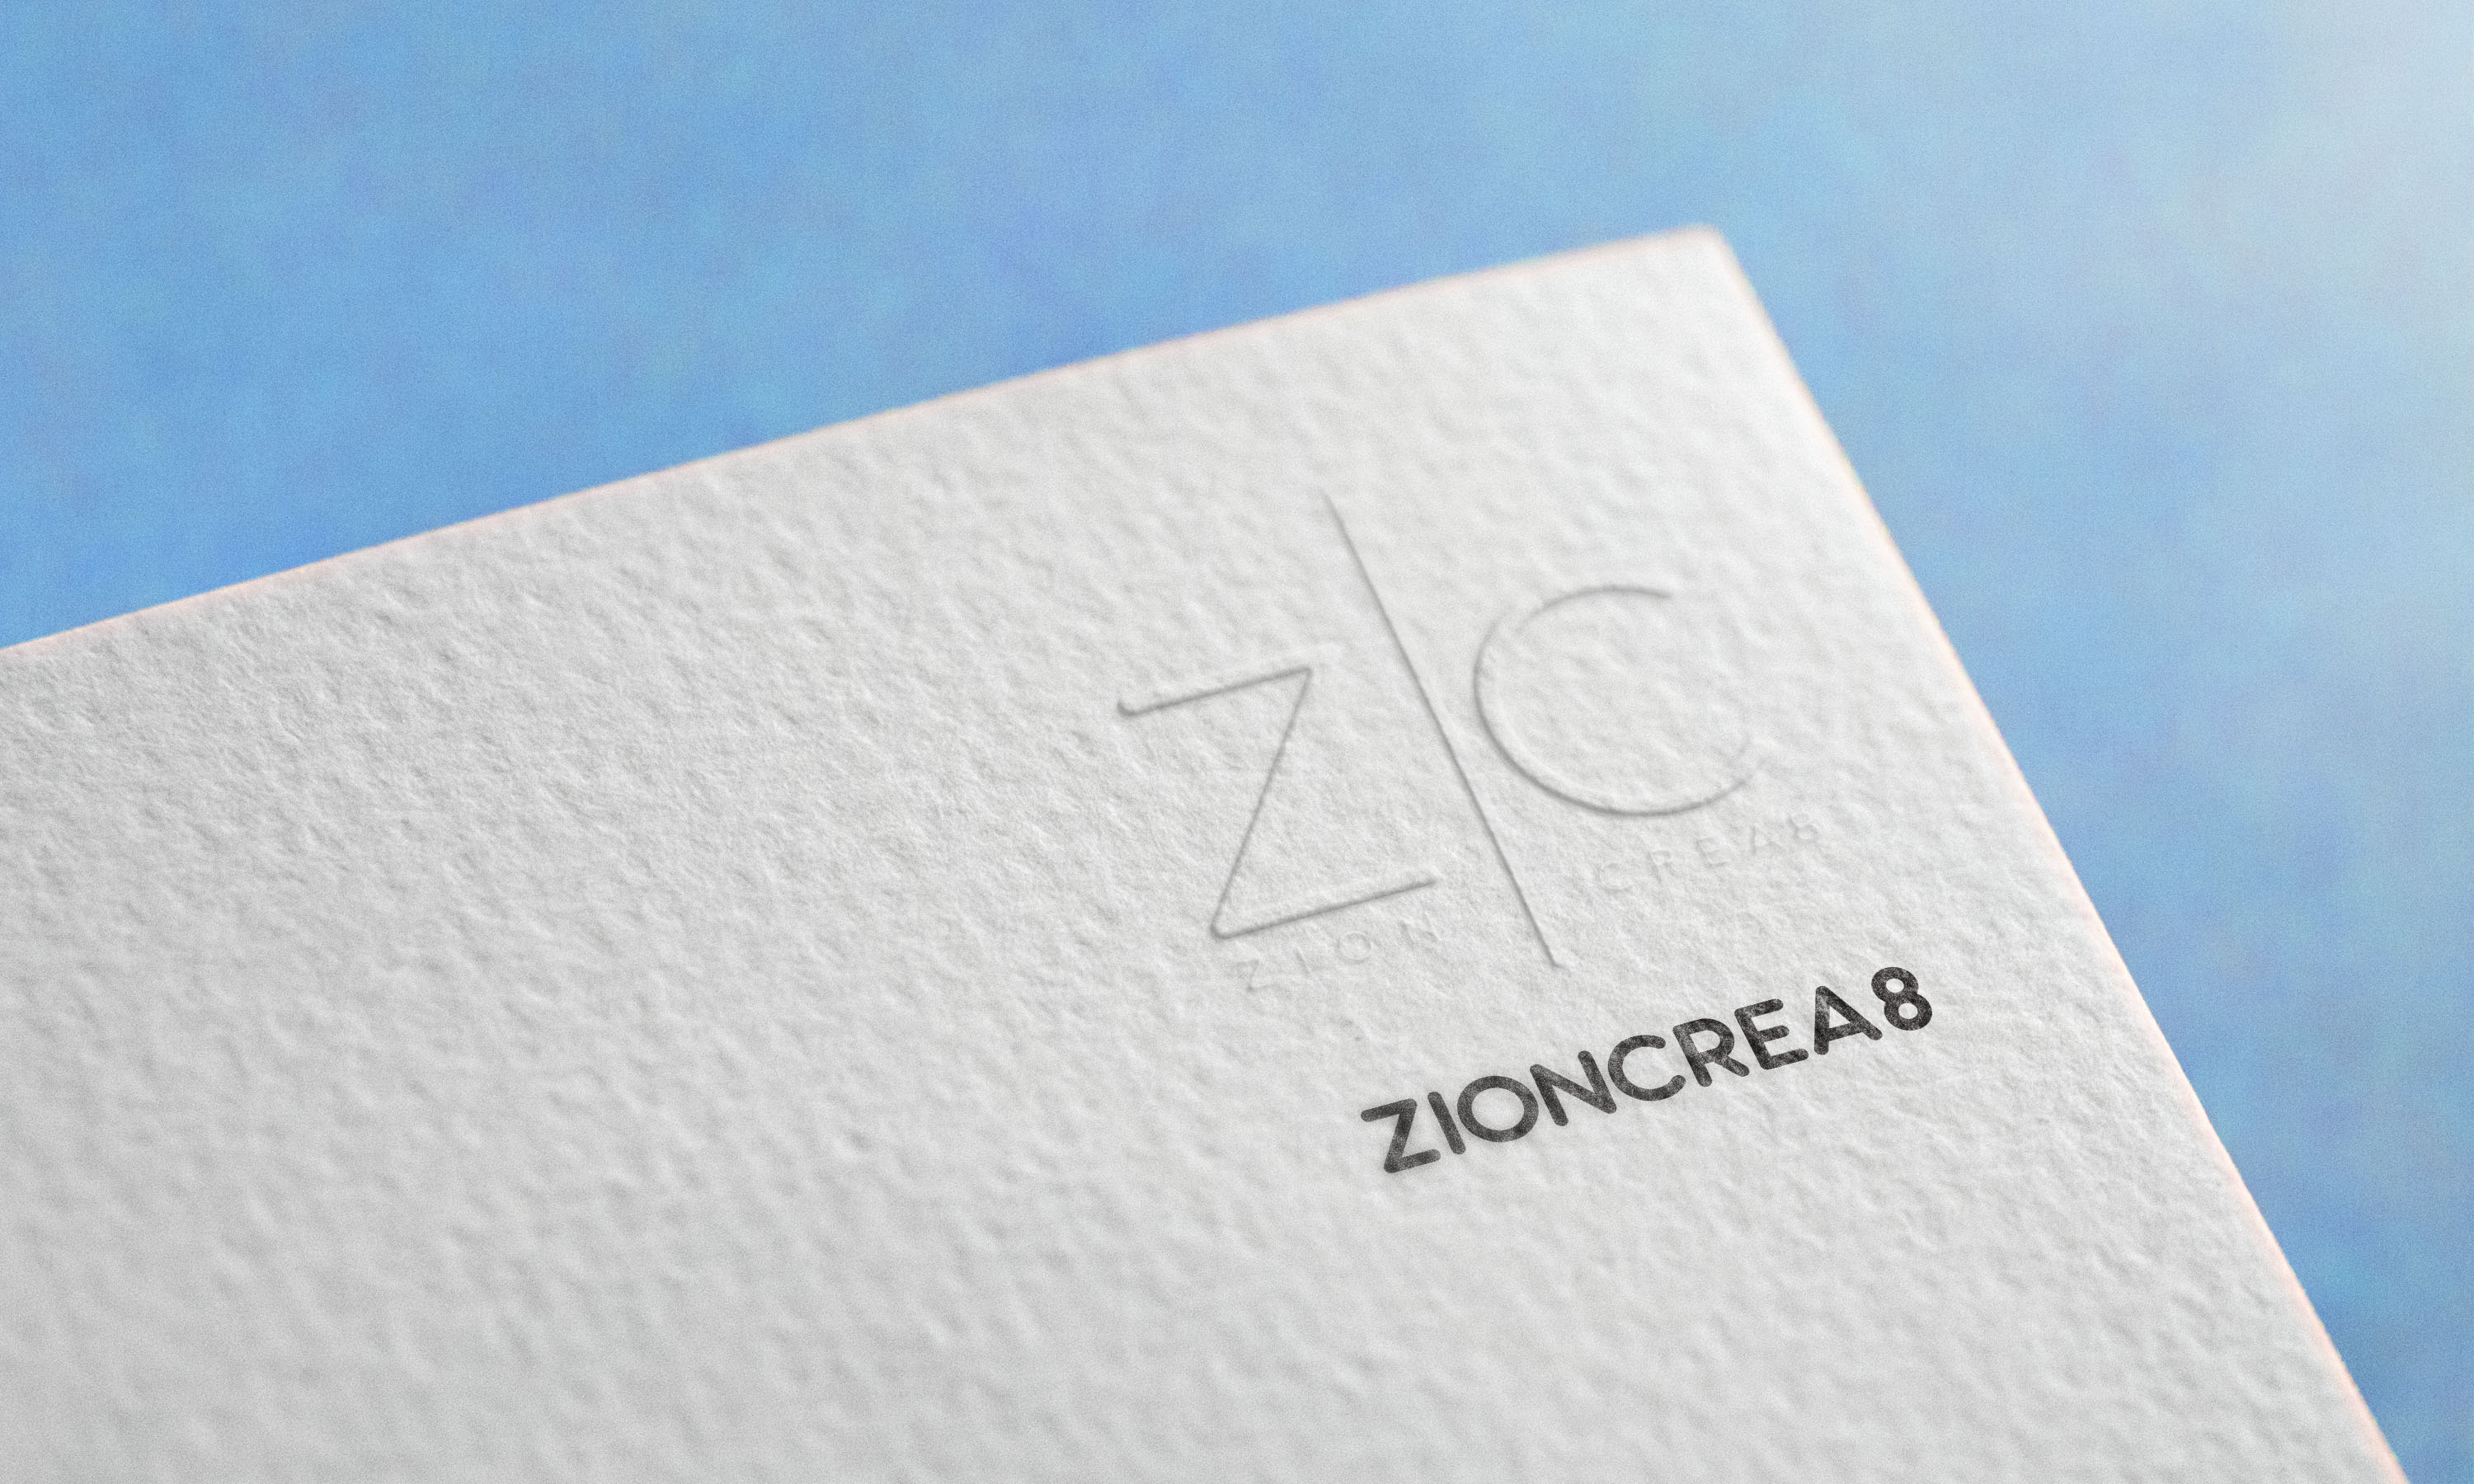 Zioncrea8 provider